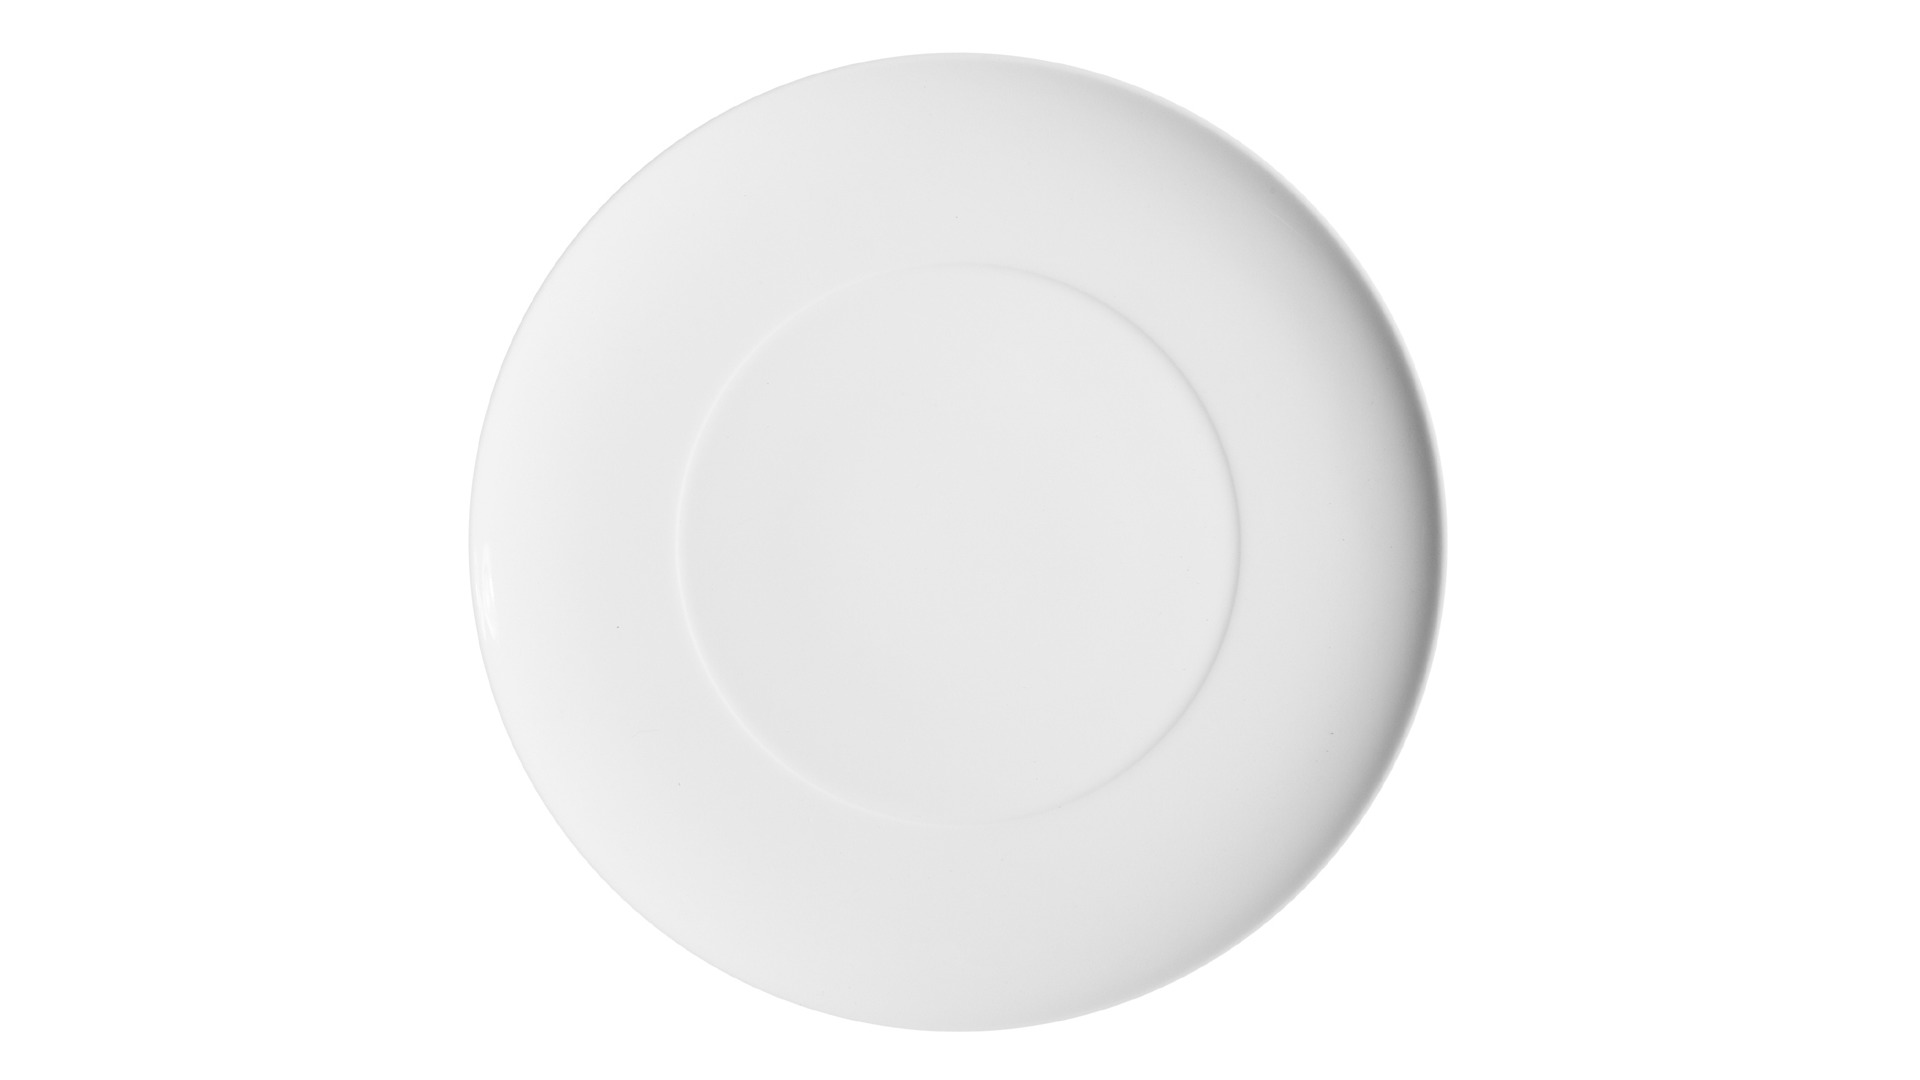 Тарелка обеденная Vista Alegre Домо Белый 28 см, фарфор